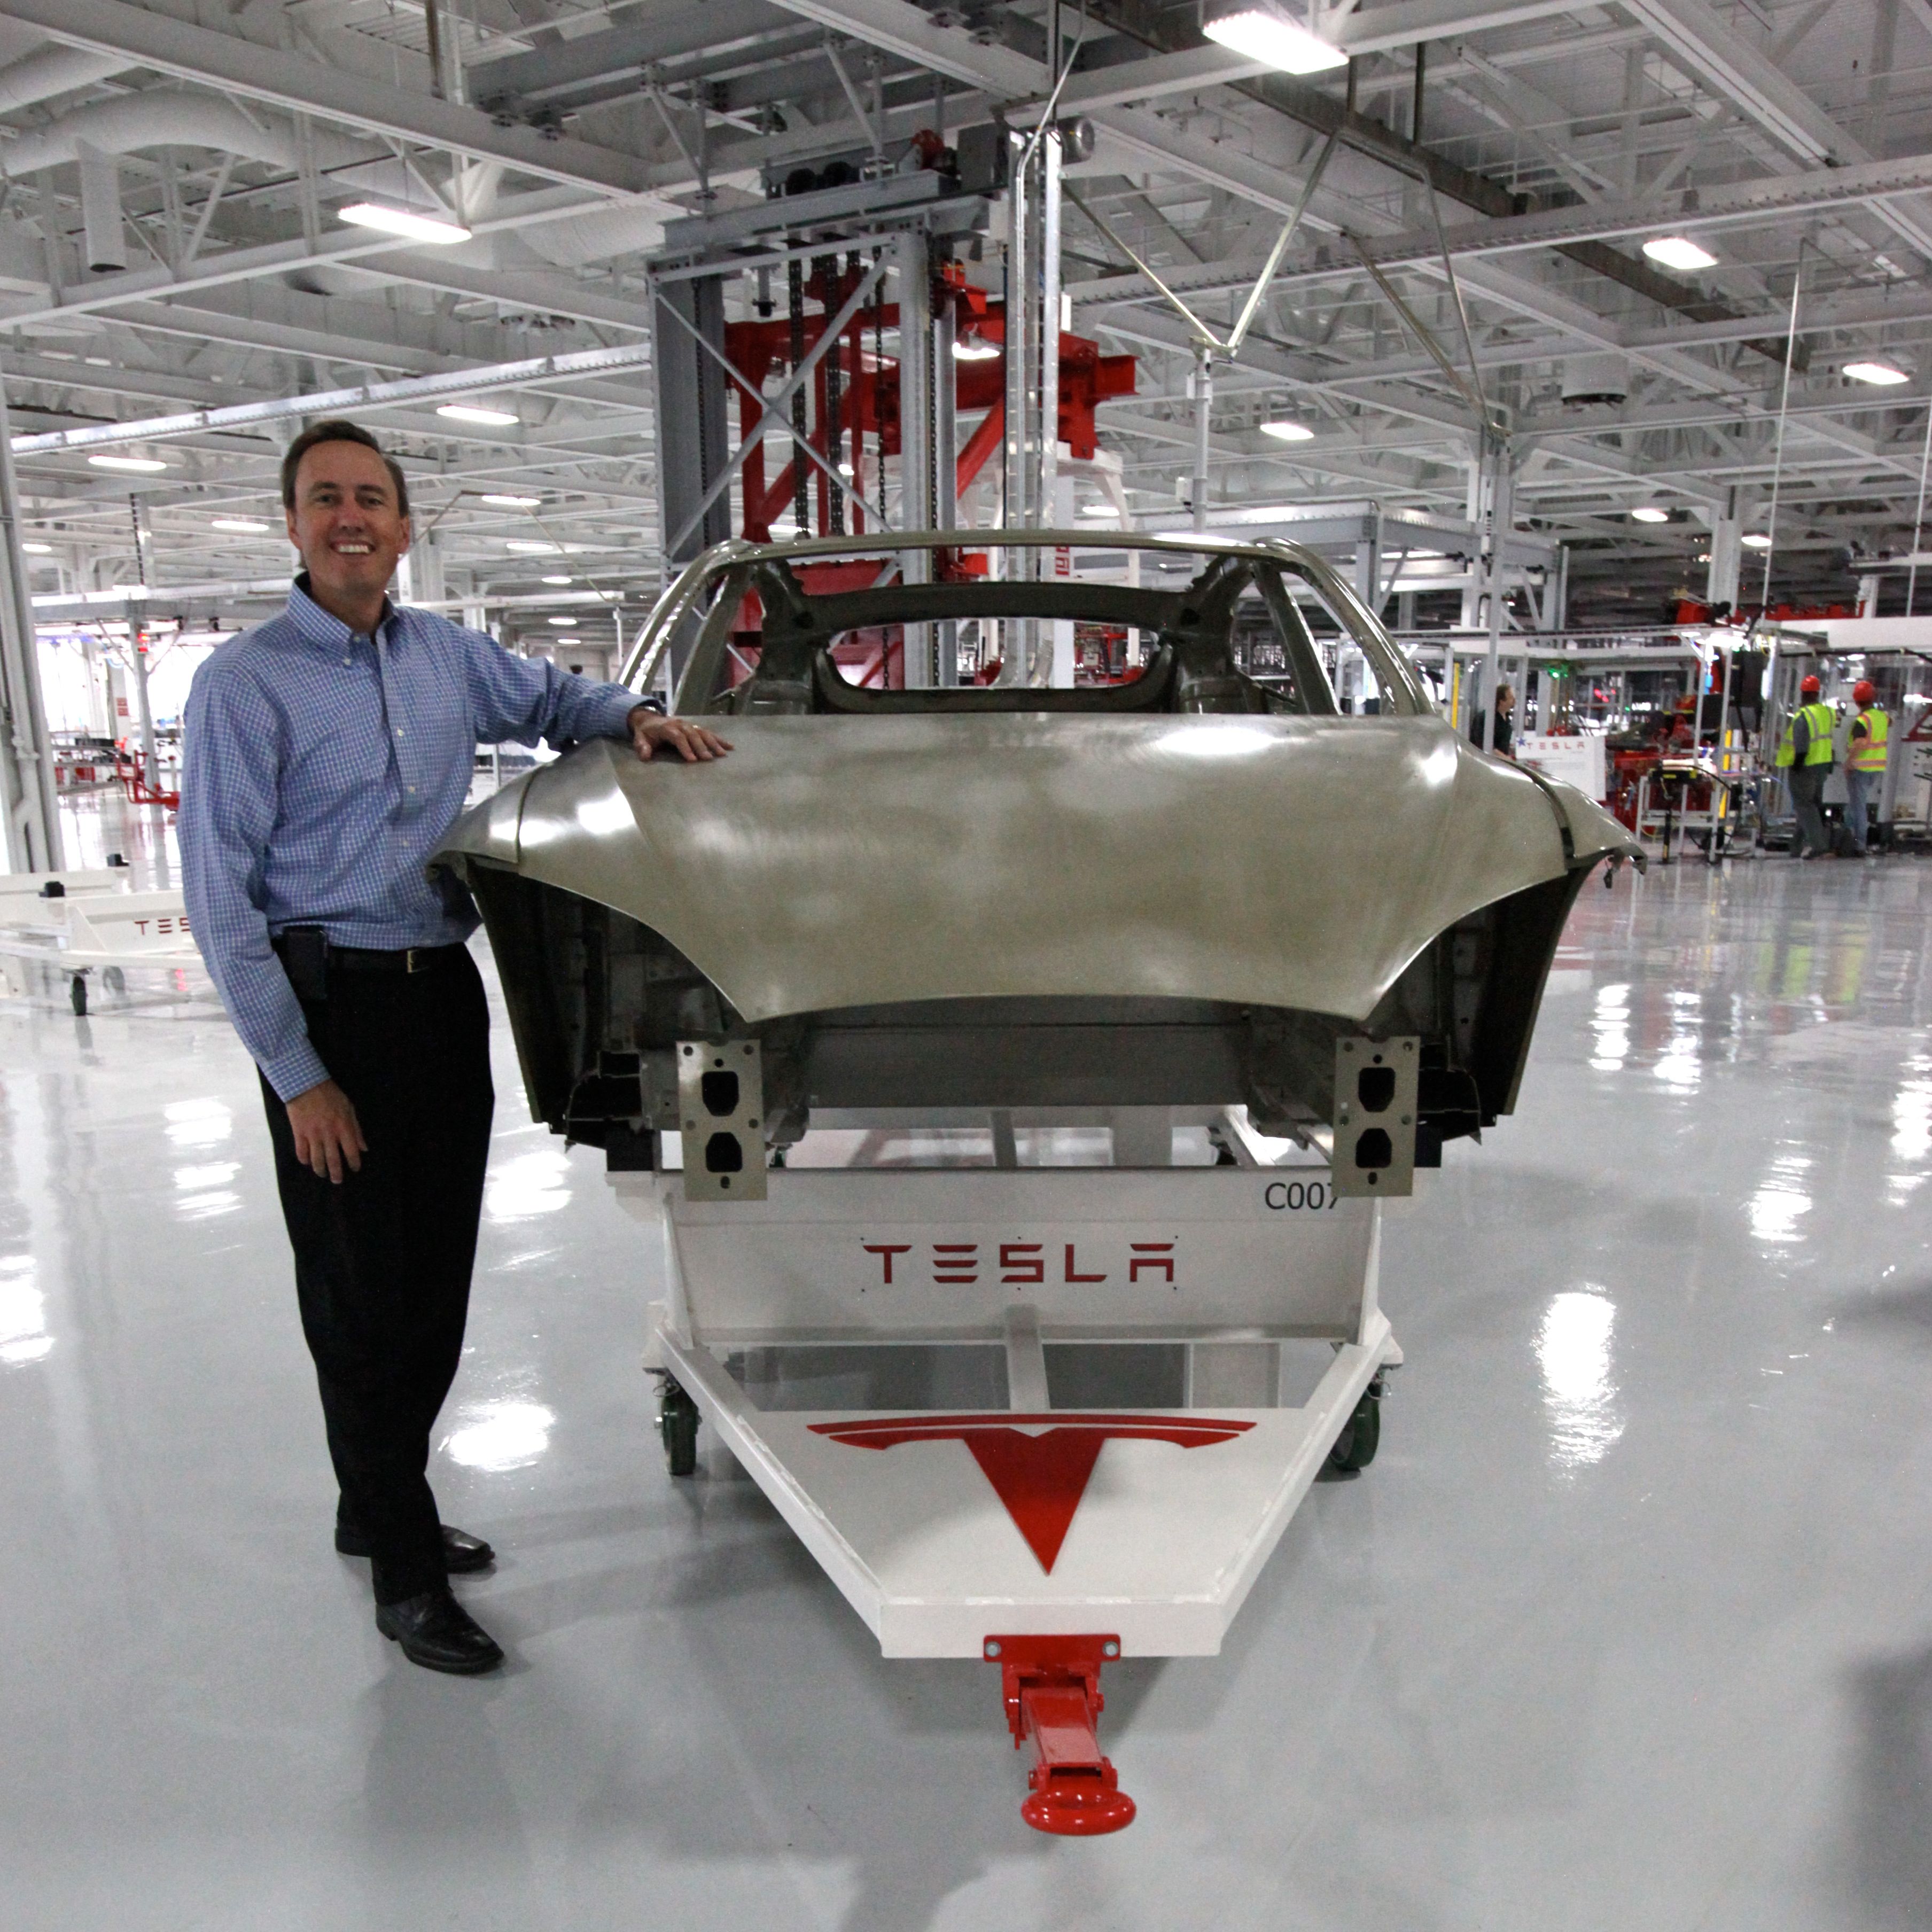 Tesla factory floor in front of the car